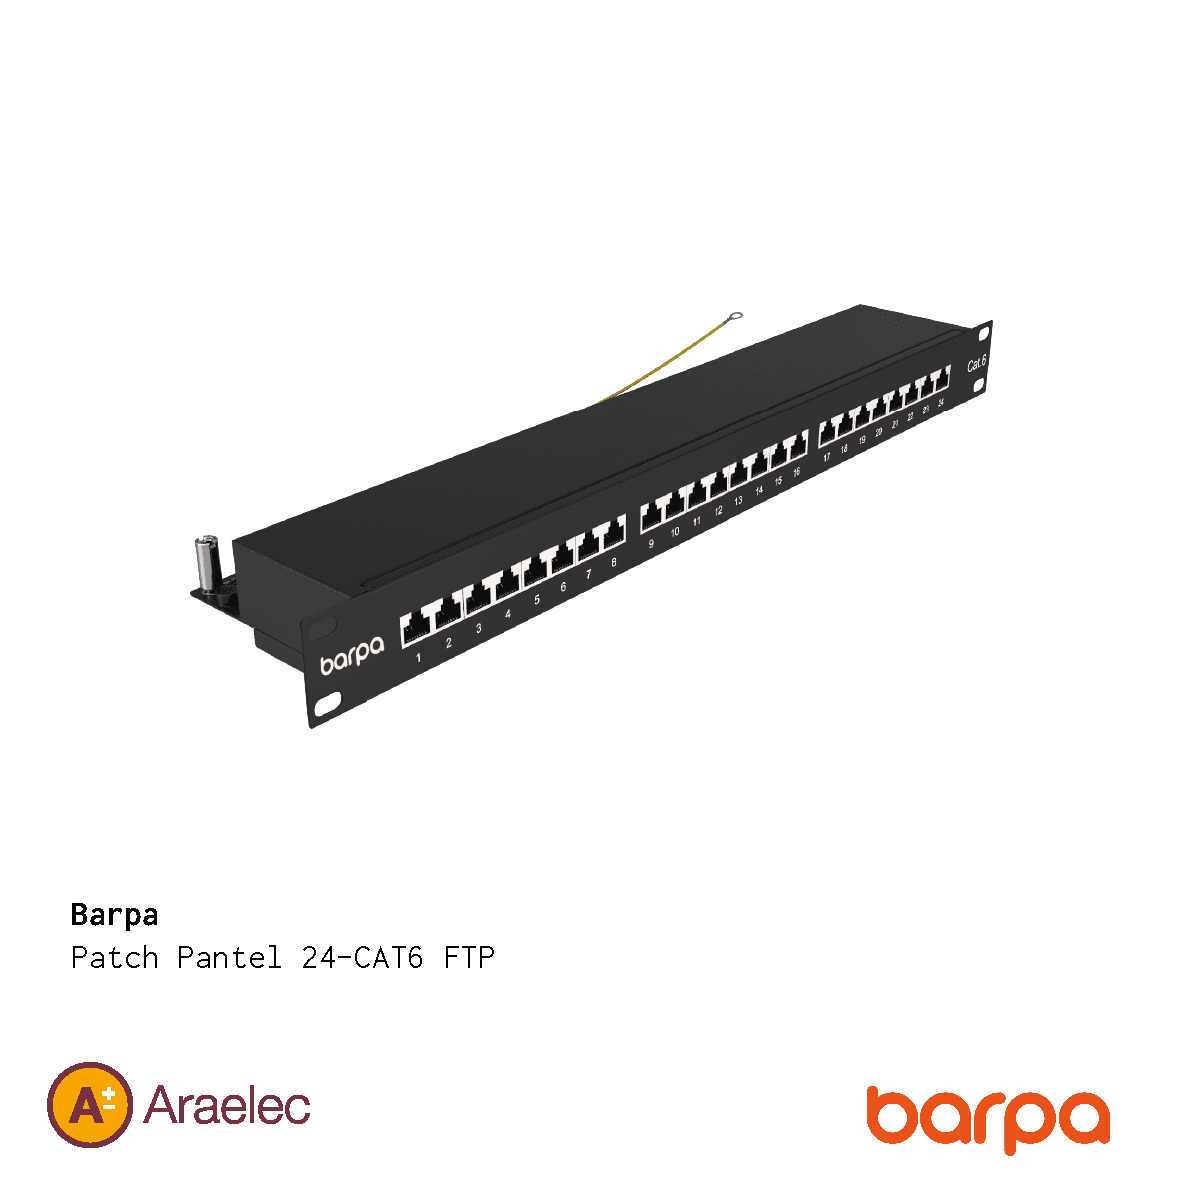 centro de datos_BARPA patch panel 24-cat6 ftp araelec<br />
